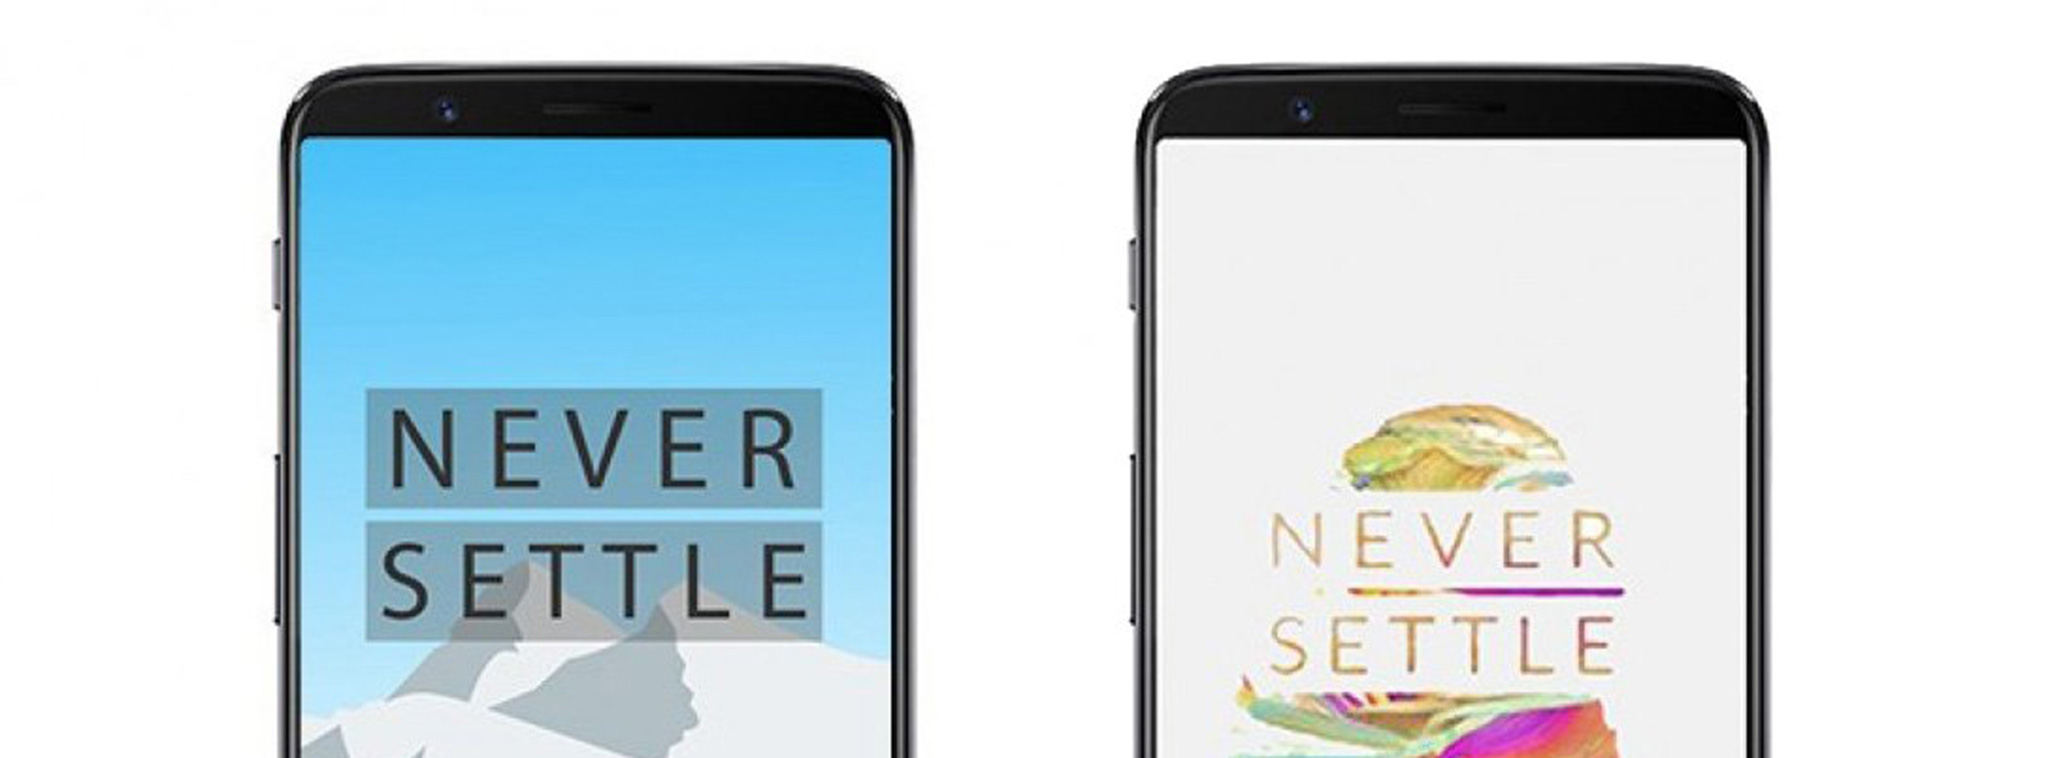 evleaks: OnePlus 5T có màn hình 18:9, ra mắt vào cuối tháng 11